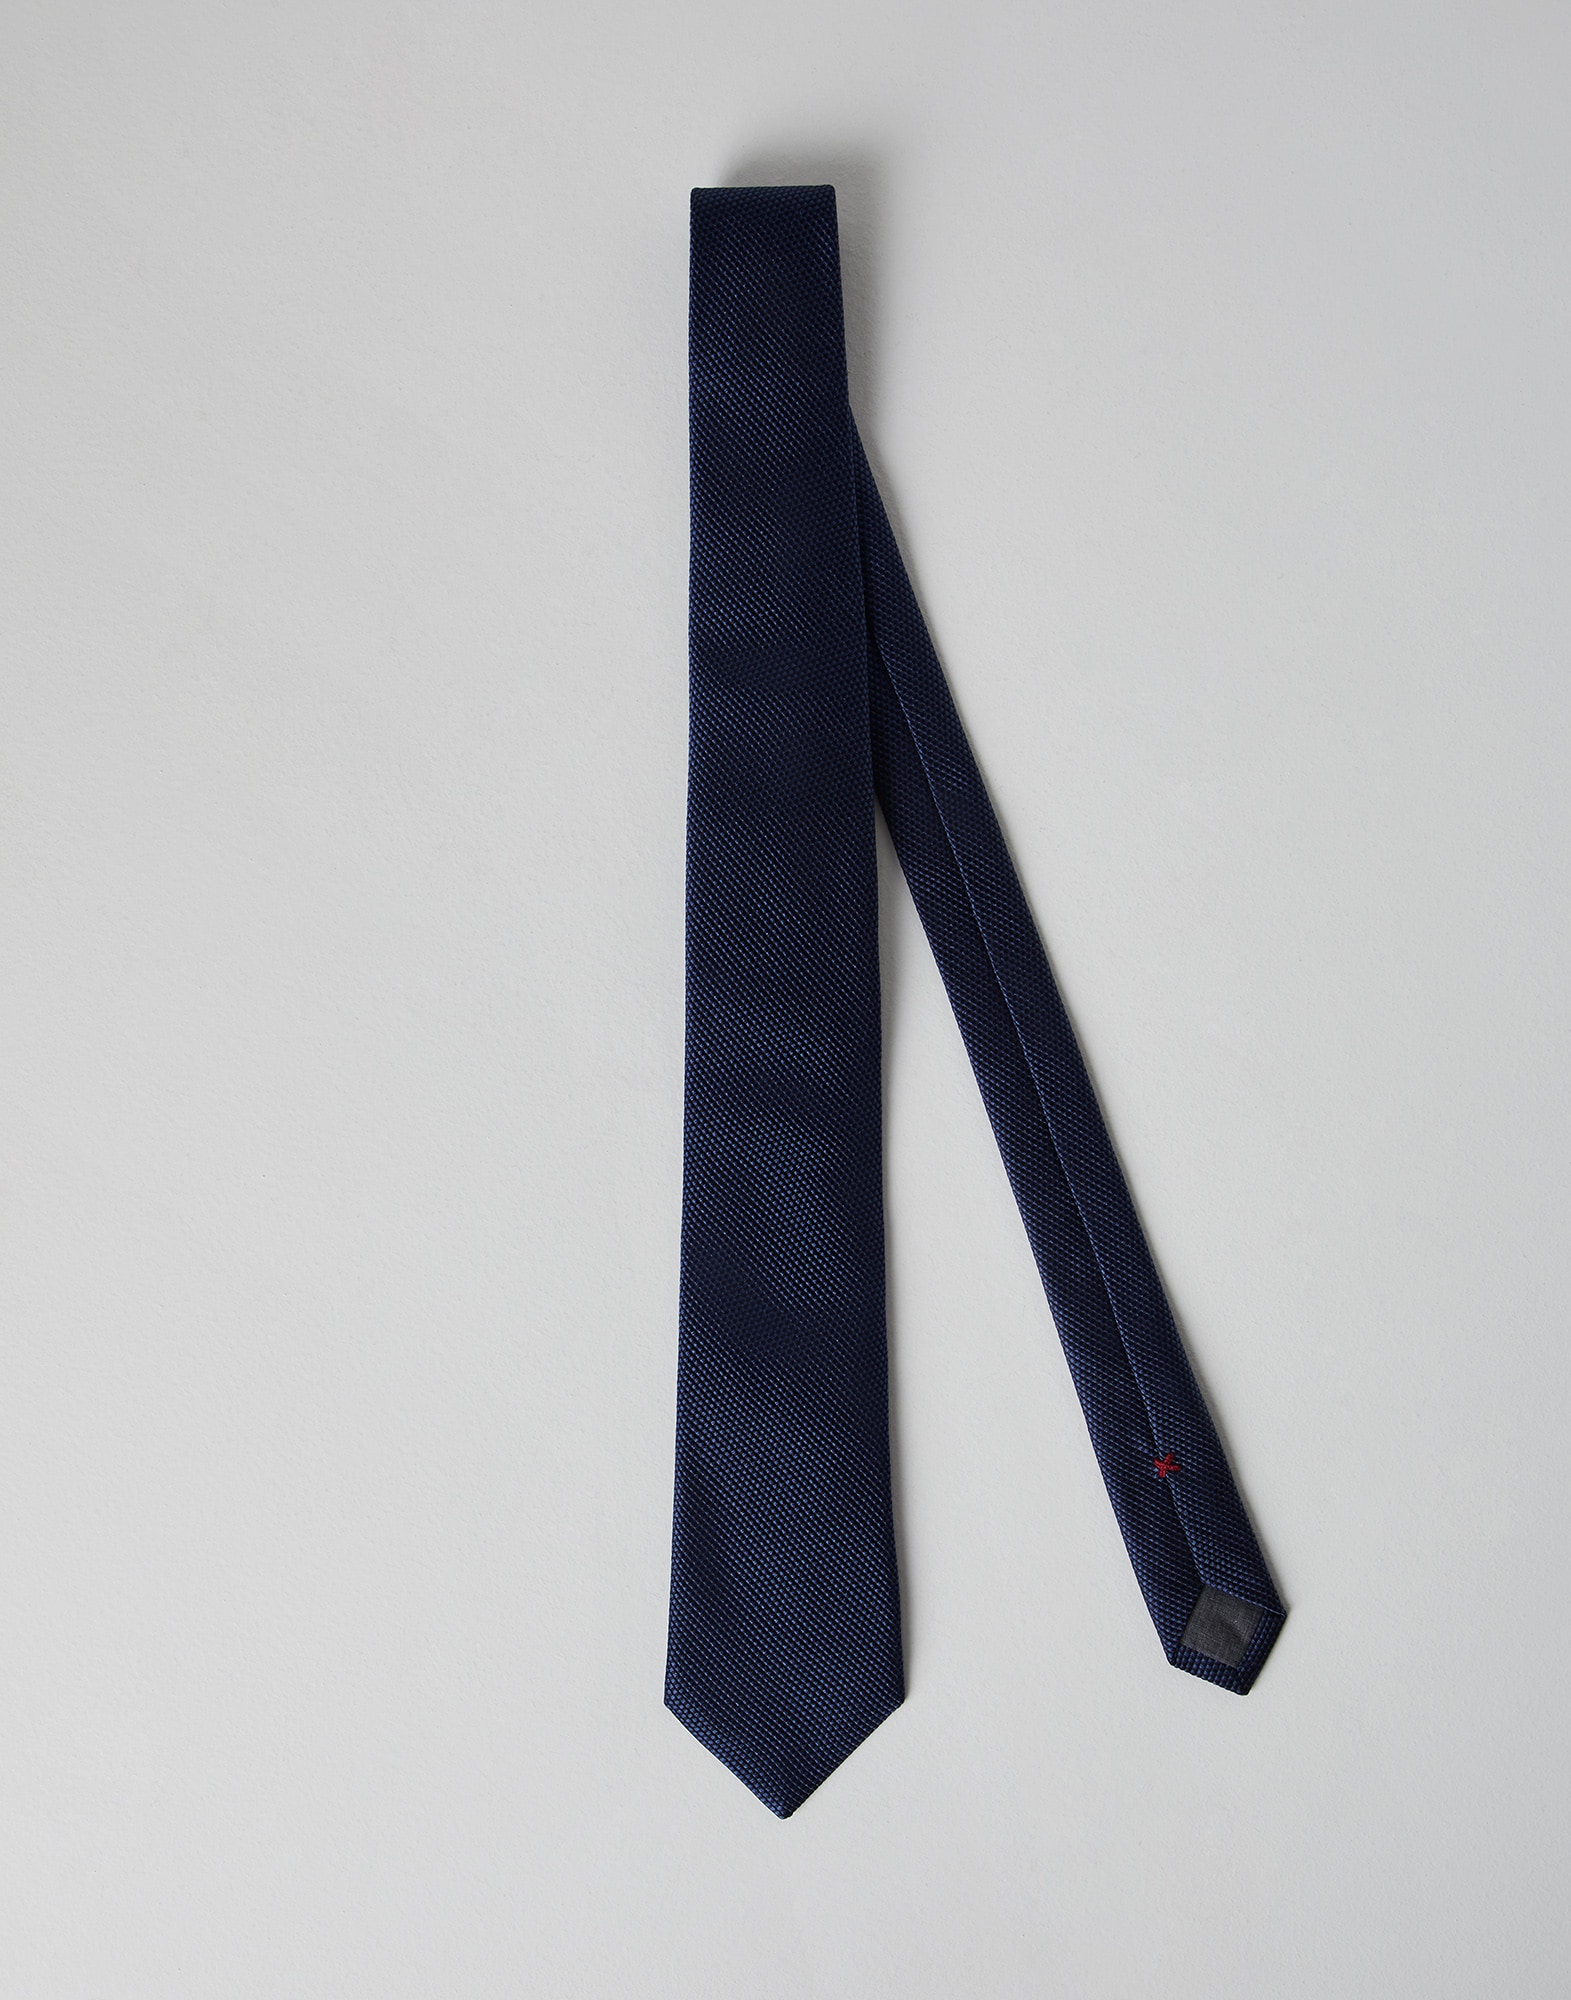 Cravate en soie armurée